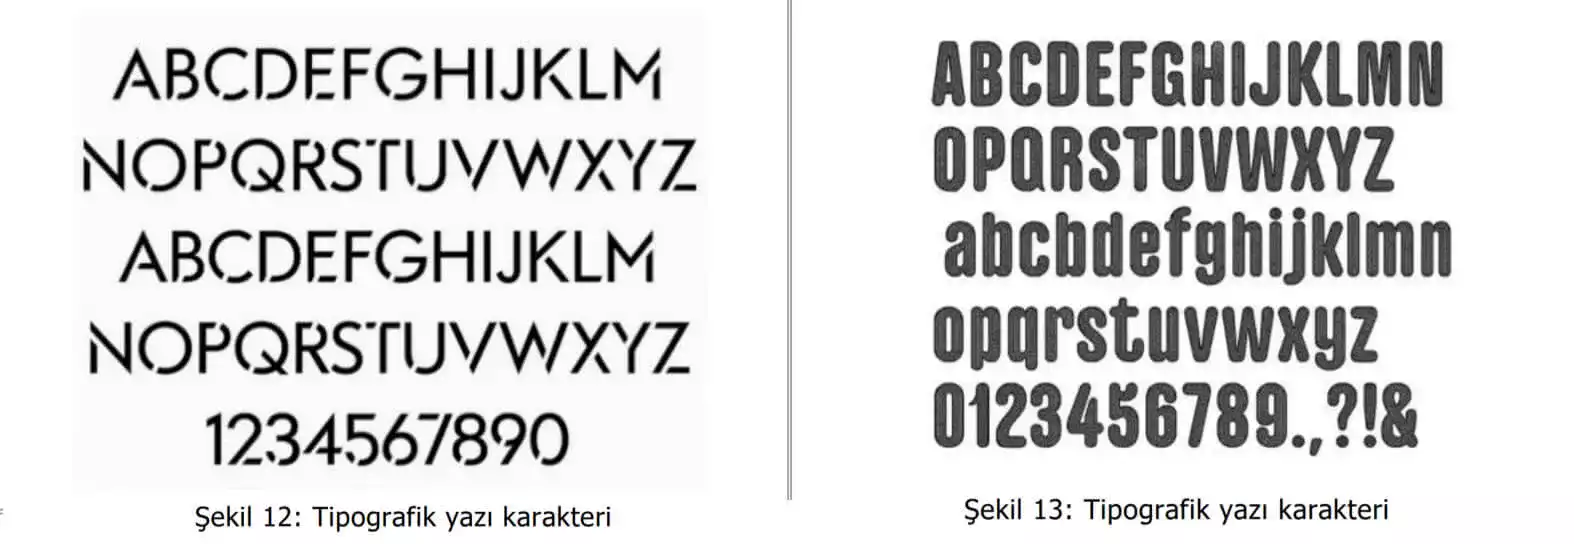 tipografik yazı karakter örnekleri-Kayseri Patent